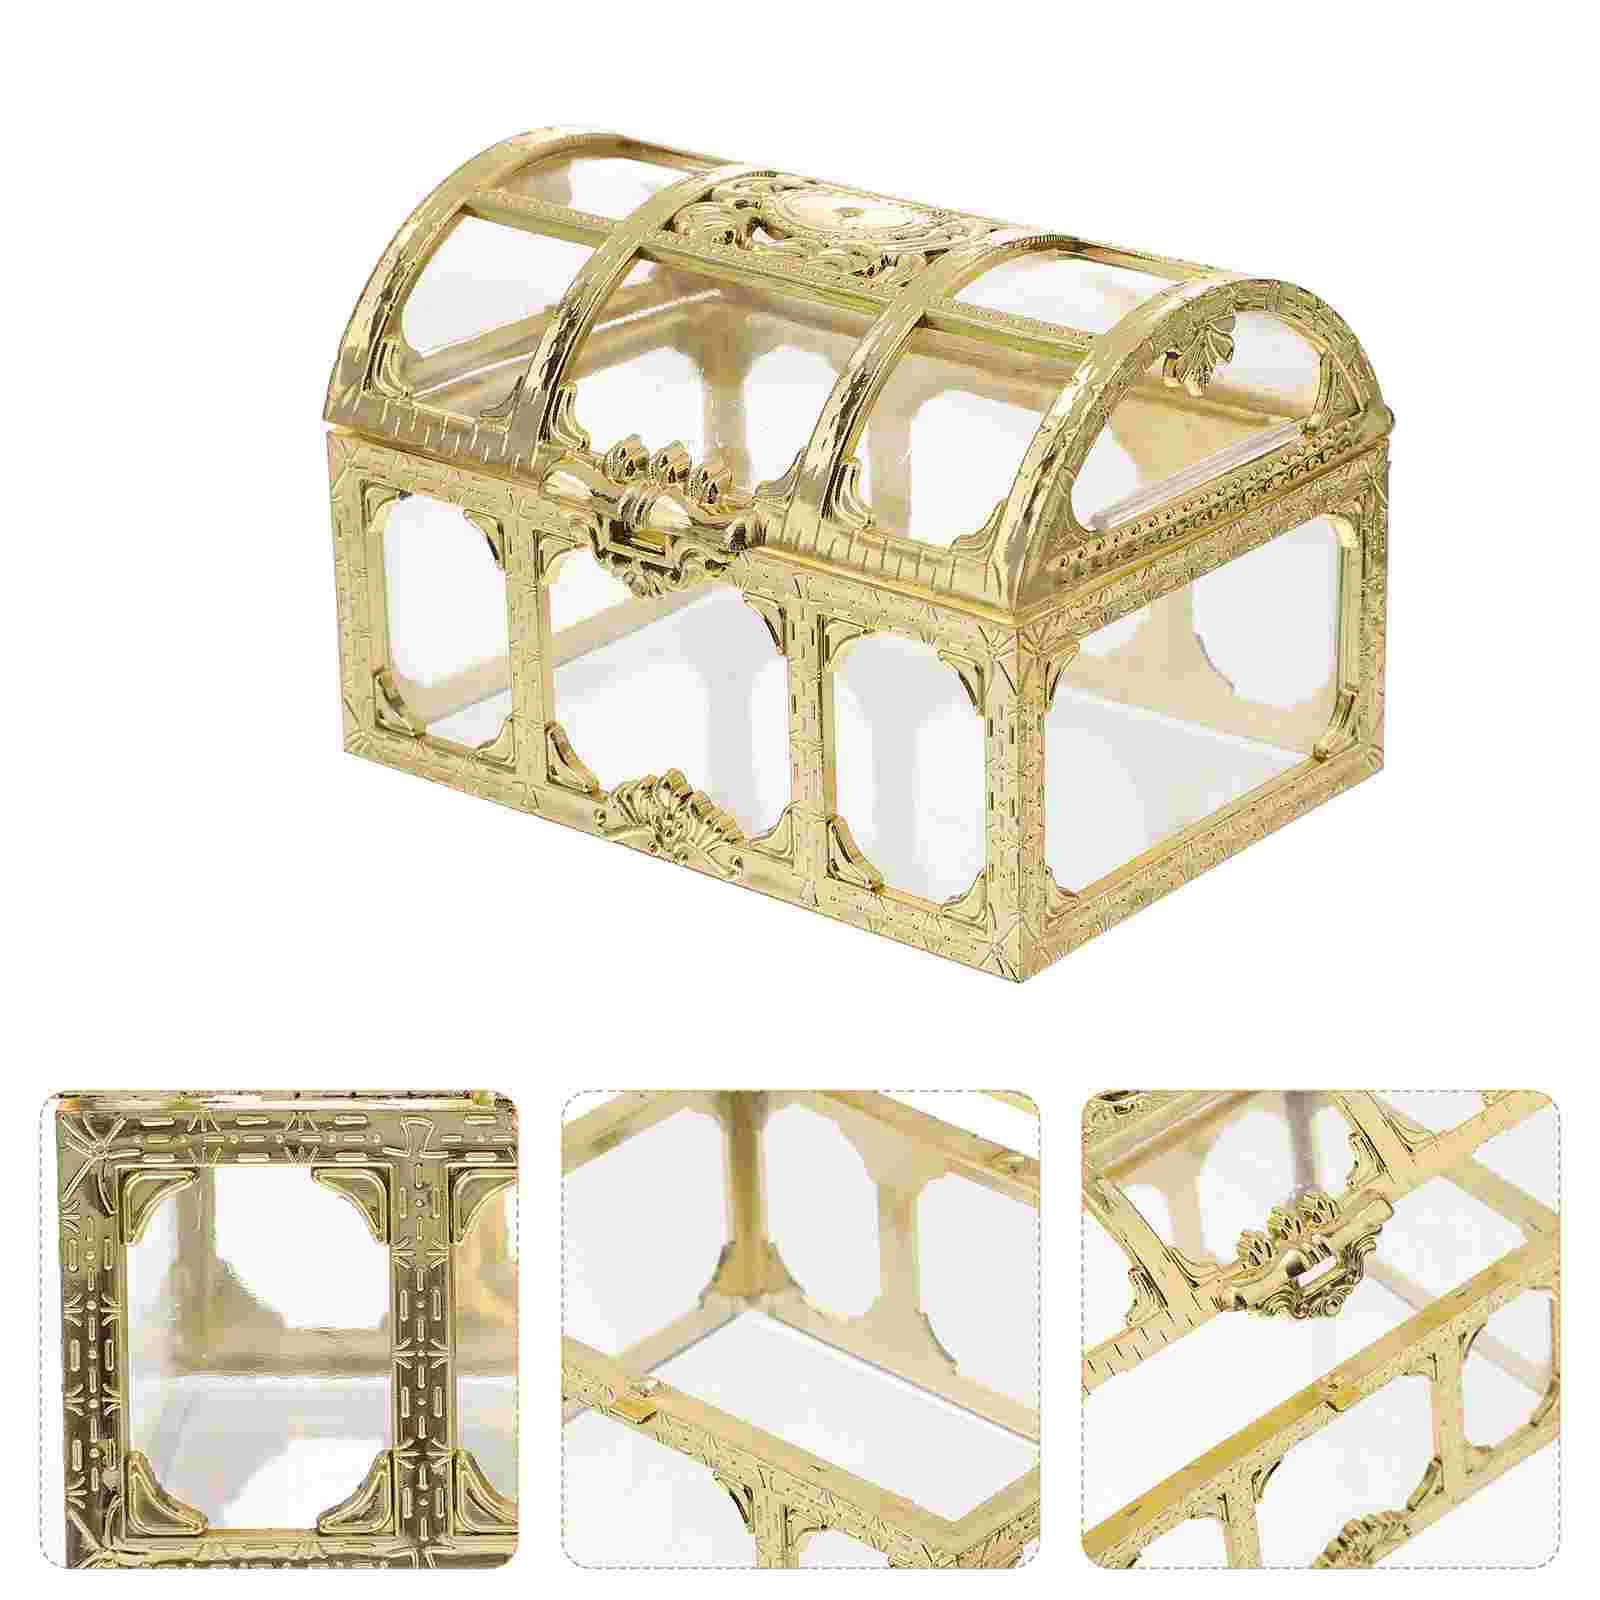 

Коробка прозрачная Пиратская коробка, 2 шт., прозрачная шкатулка для хранения украшений для детей, пиратские конфеты, пиратские сувениры, коробка для пиратов